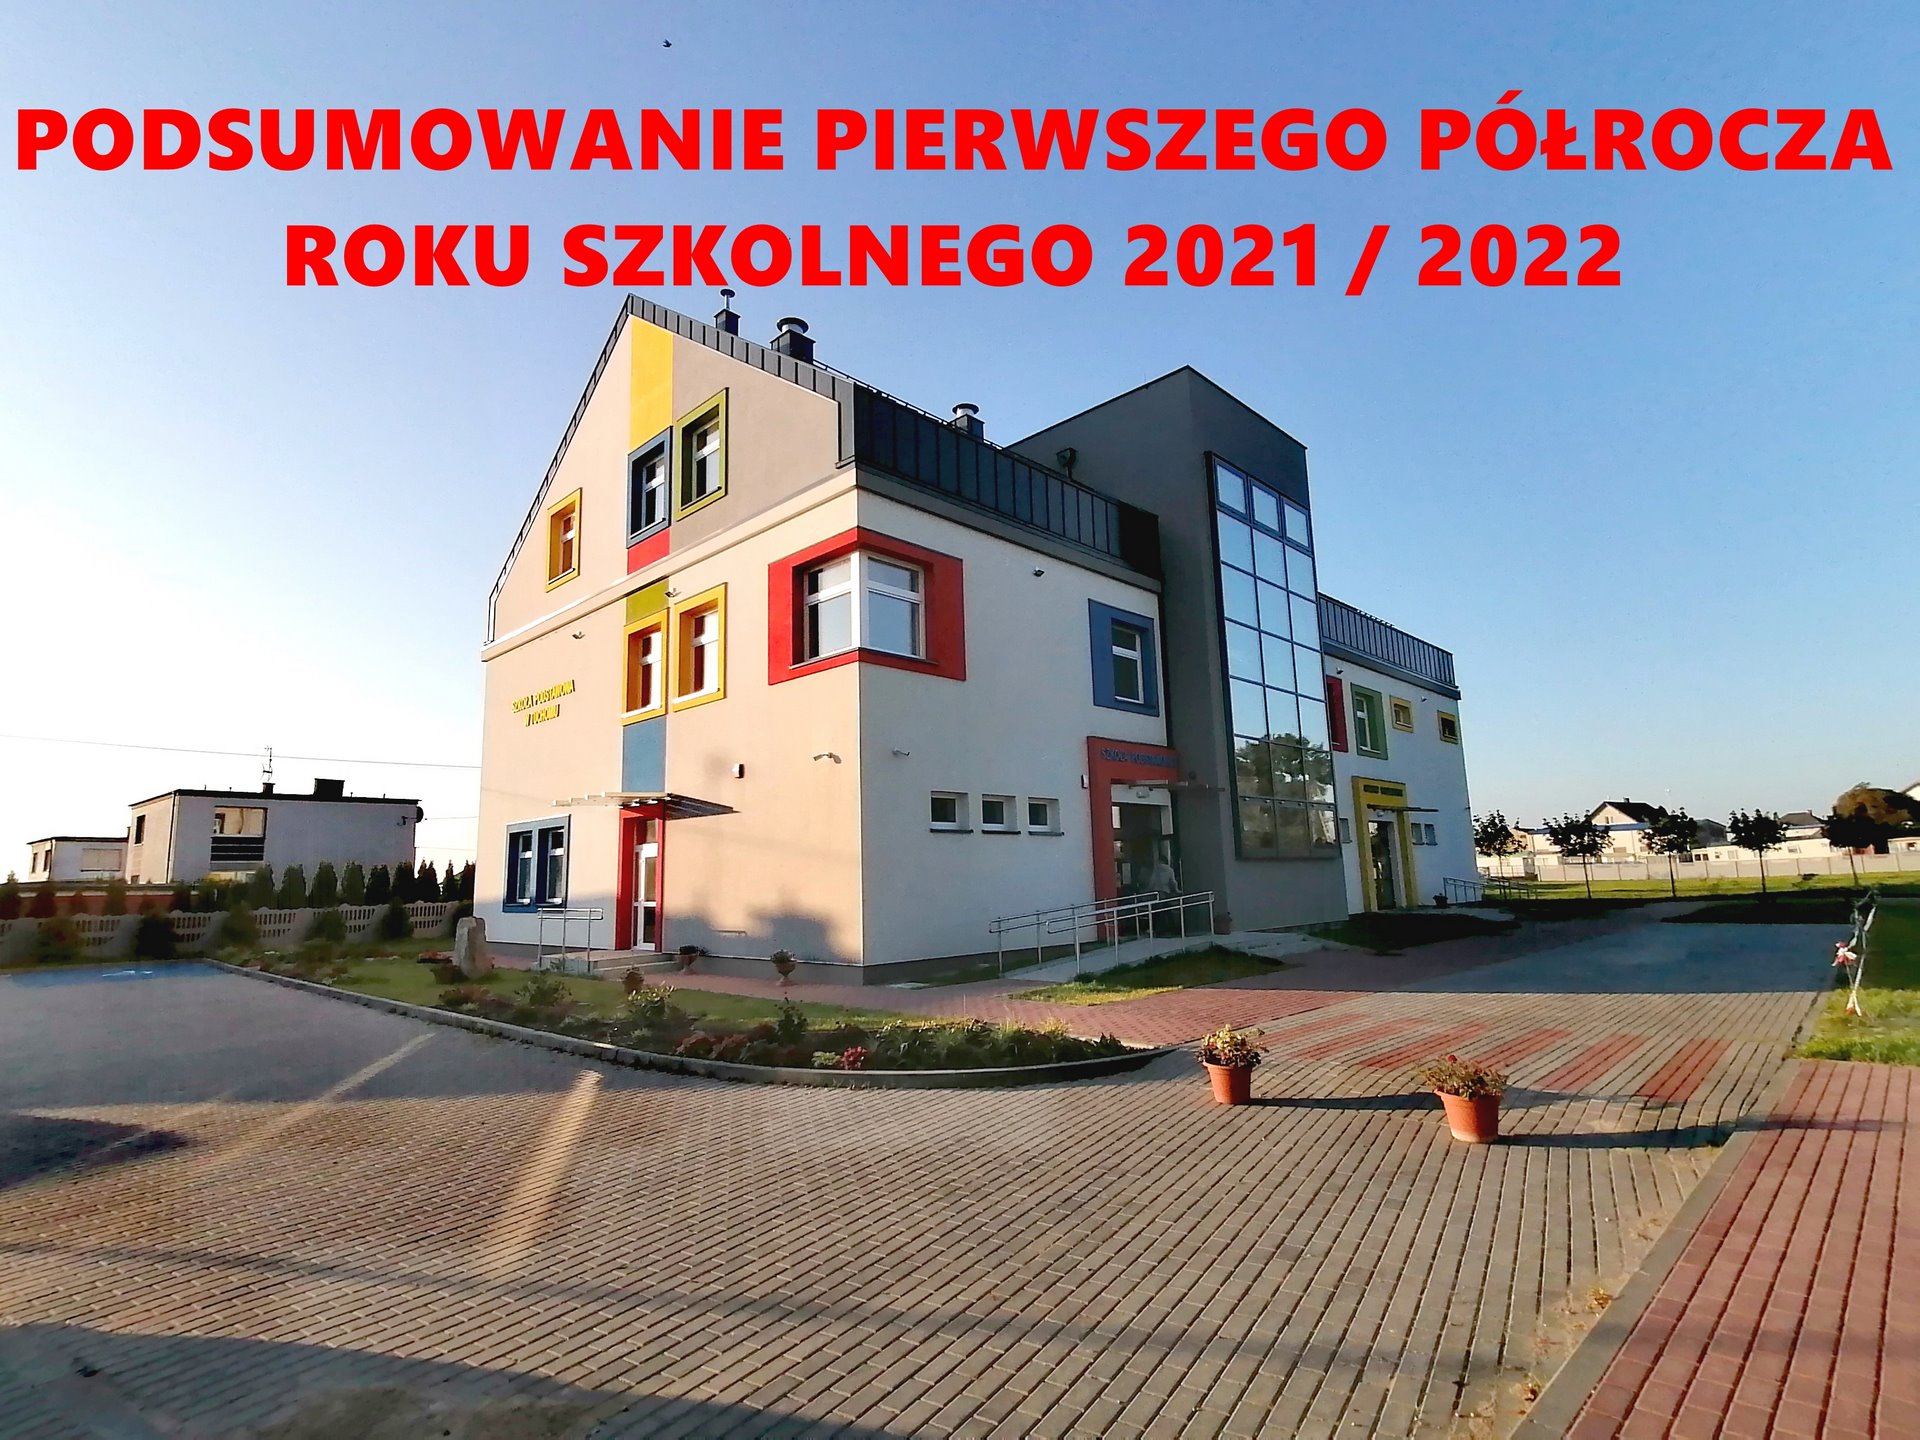 Podsumowanie pierwszego półrocza roku szkolnego 2021 / 2022